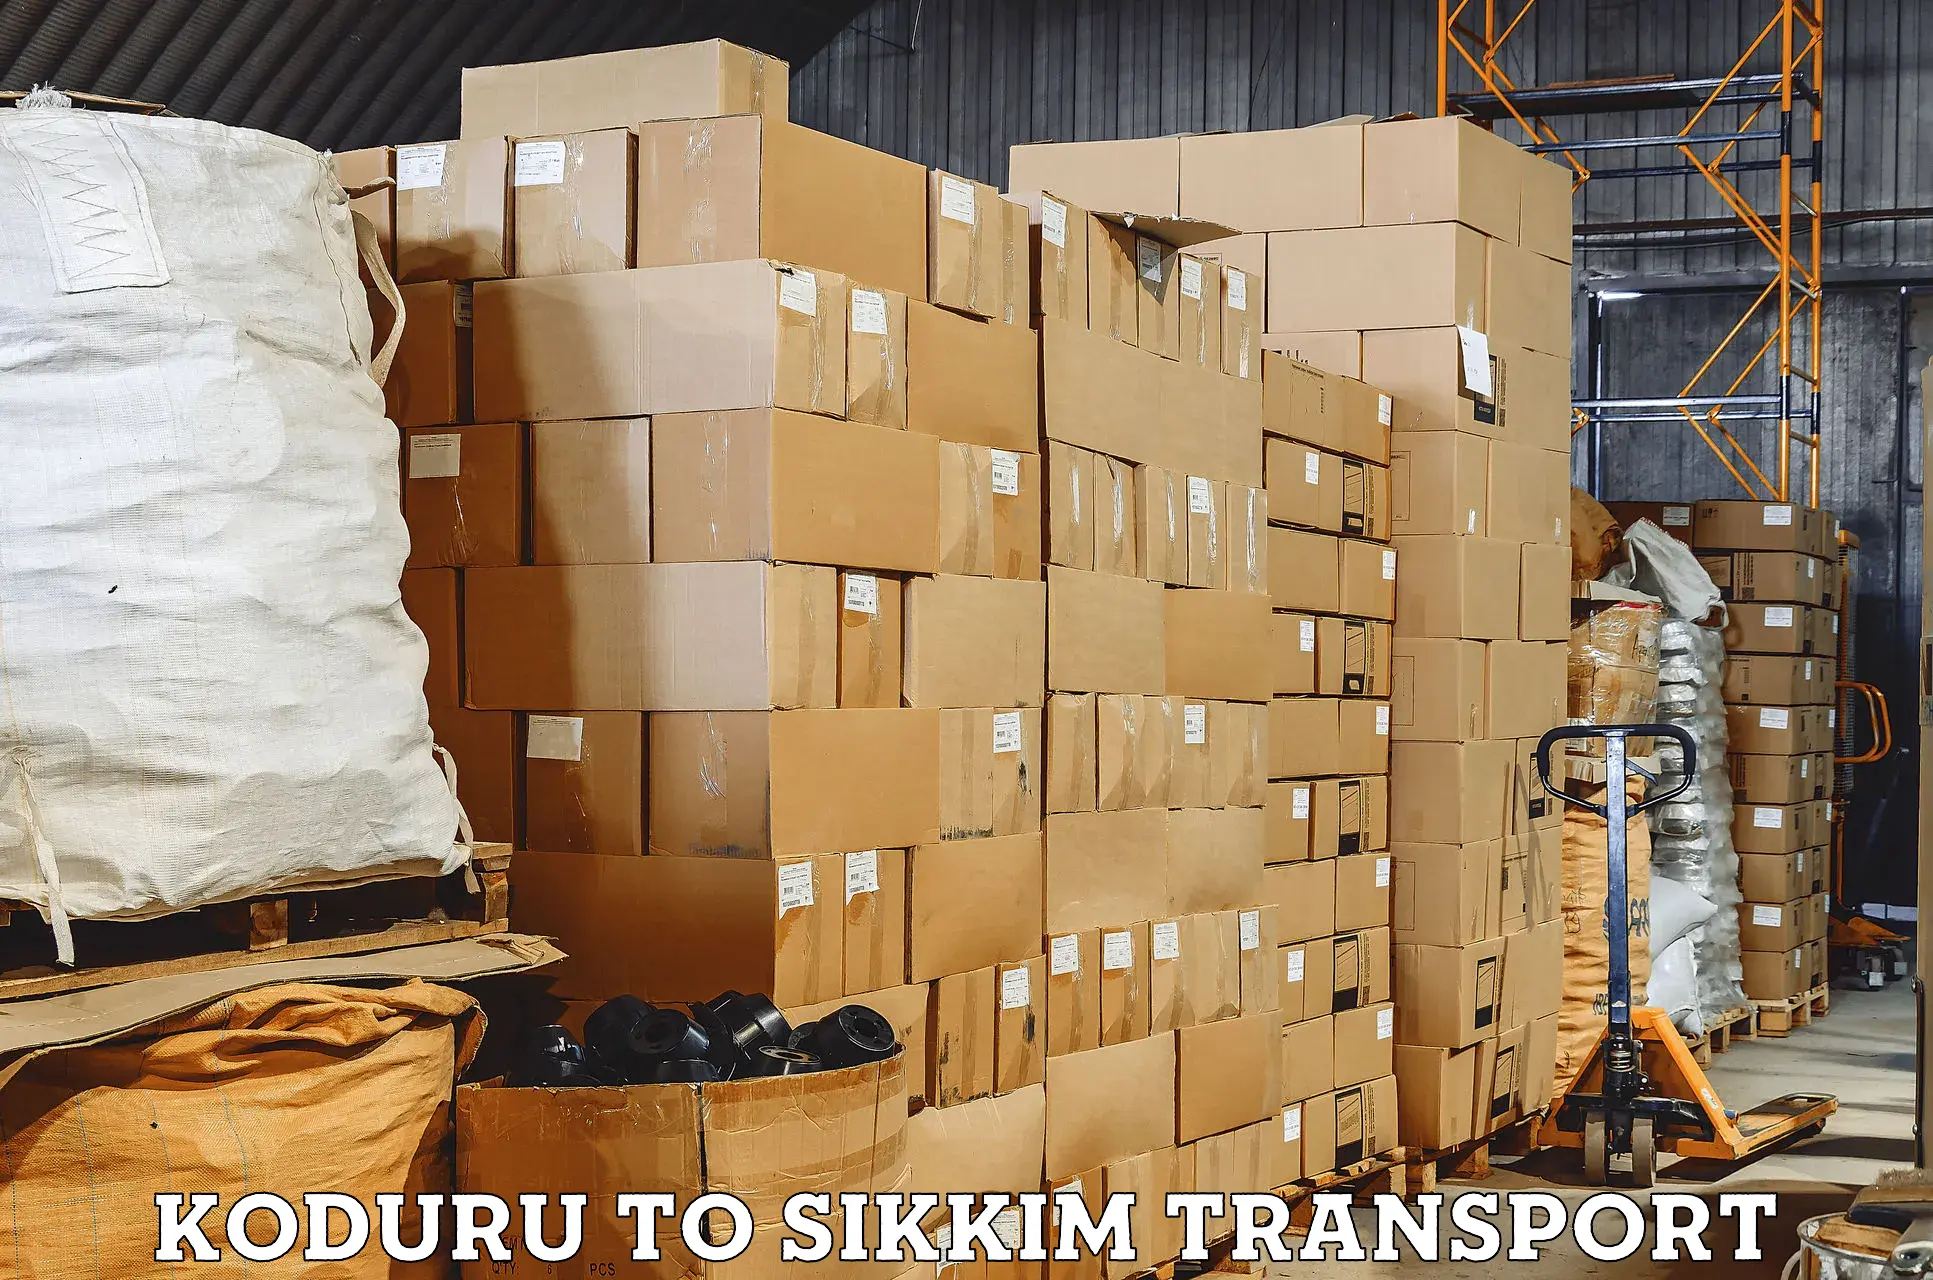 Two wheeler transport services Koduru to Geyzing